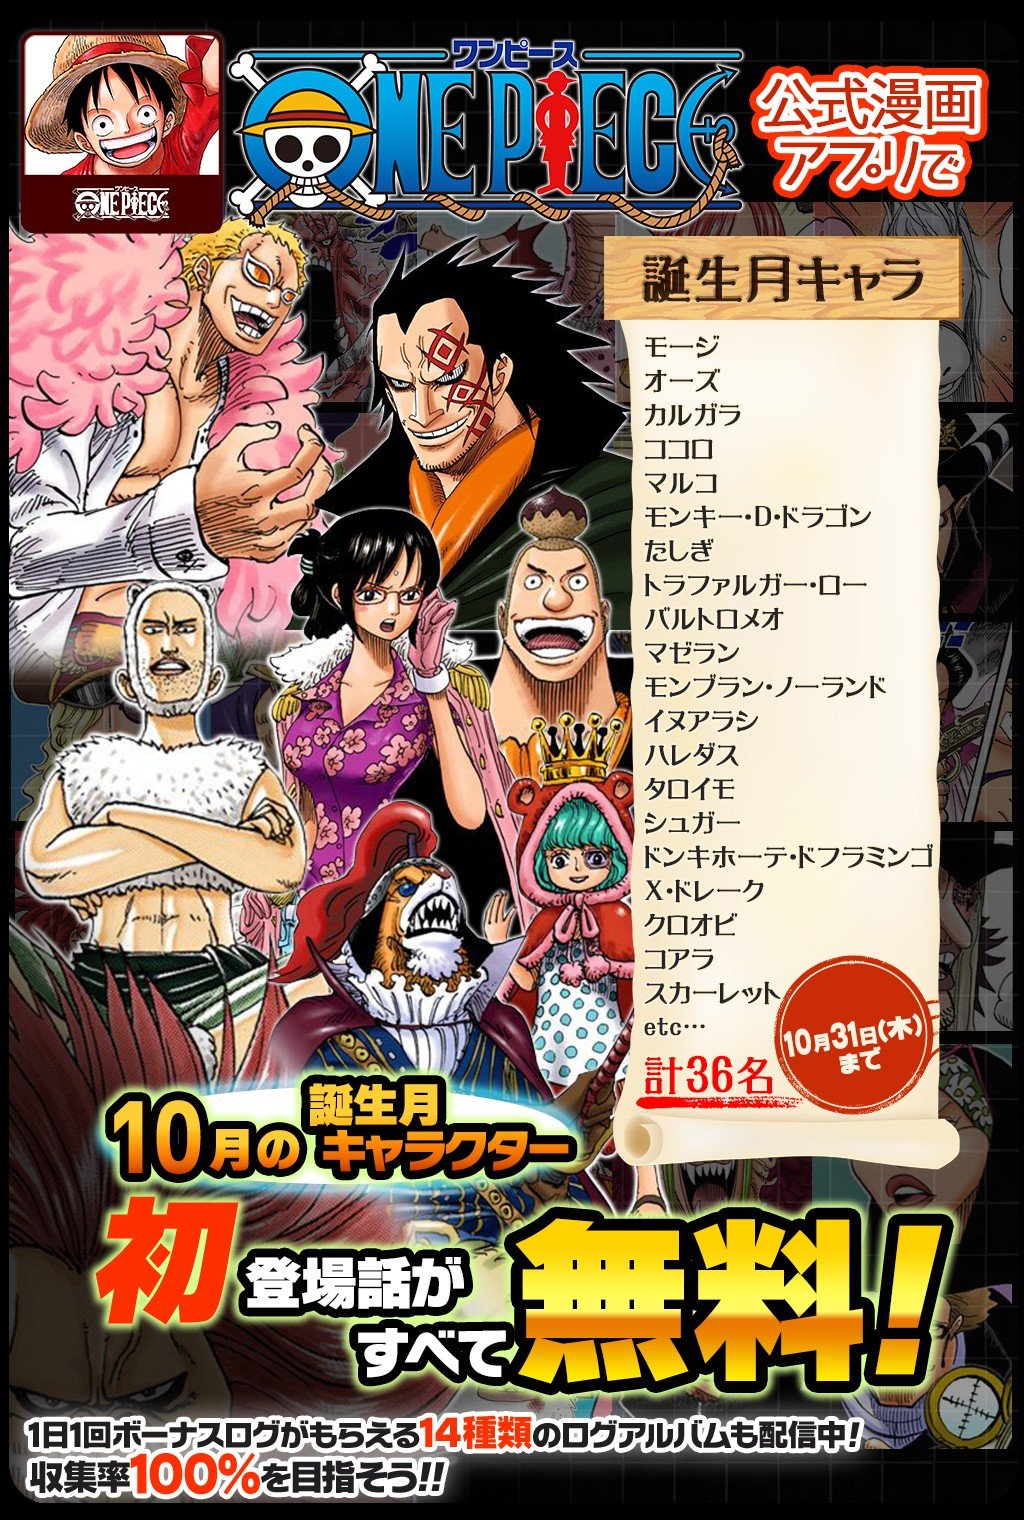 One Piece スタッフ 公式 Official 10 31 木 まで 合計30話以上無料 One Piece 公式漫画アプリで 10月誕生フェア 開催中 10月に誕生日を迎えるキャラクターの初登場話をフルカラーで読めるぞ T Co F3rqjl4pe4 セリフなしの登場話も